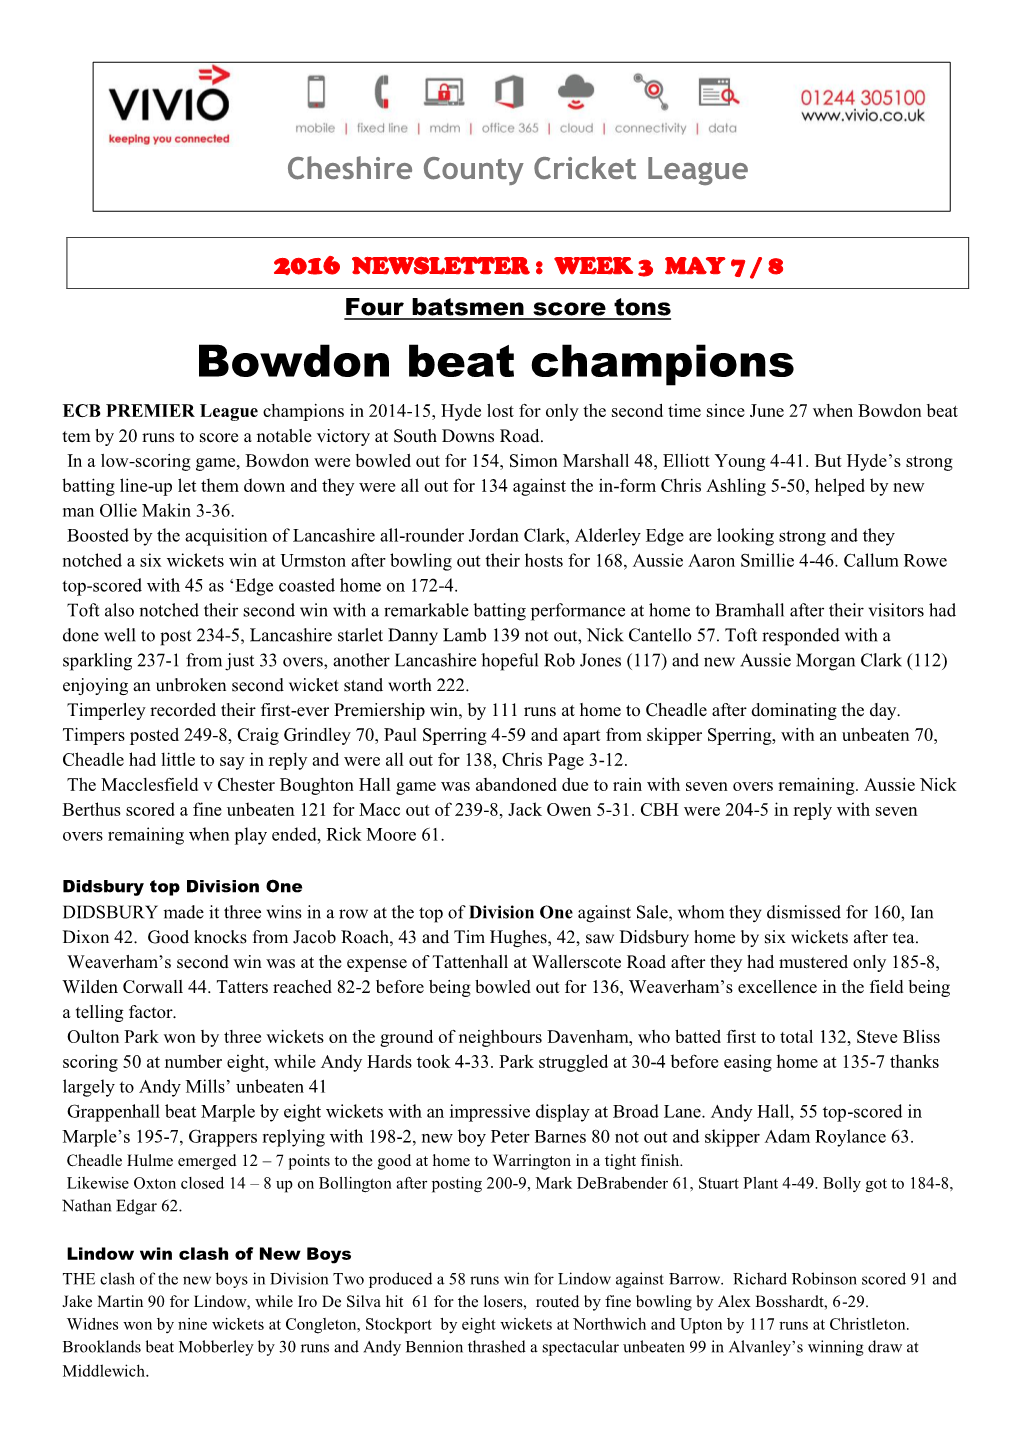 Bowdon Beat Champions